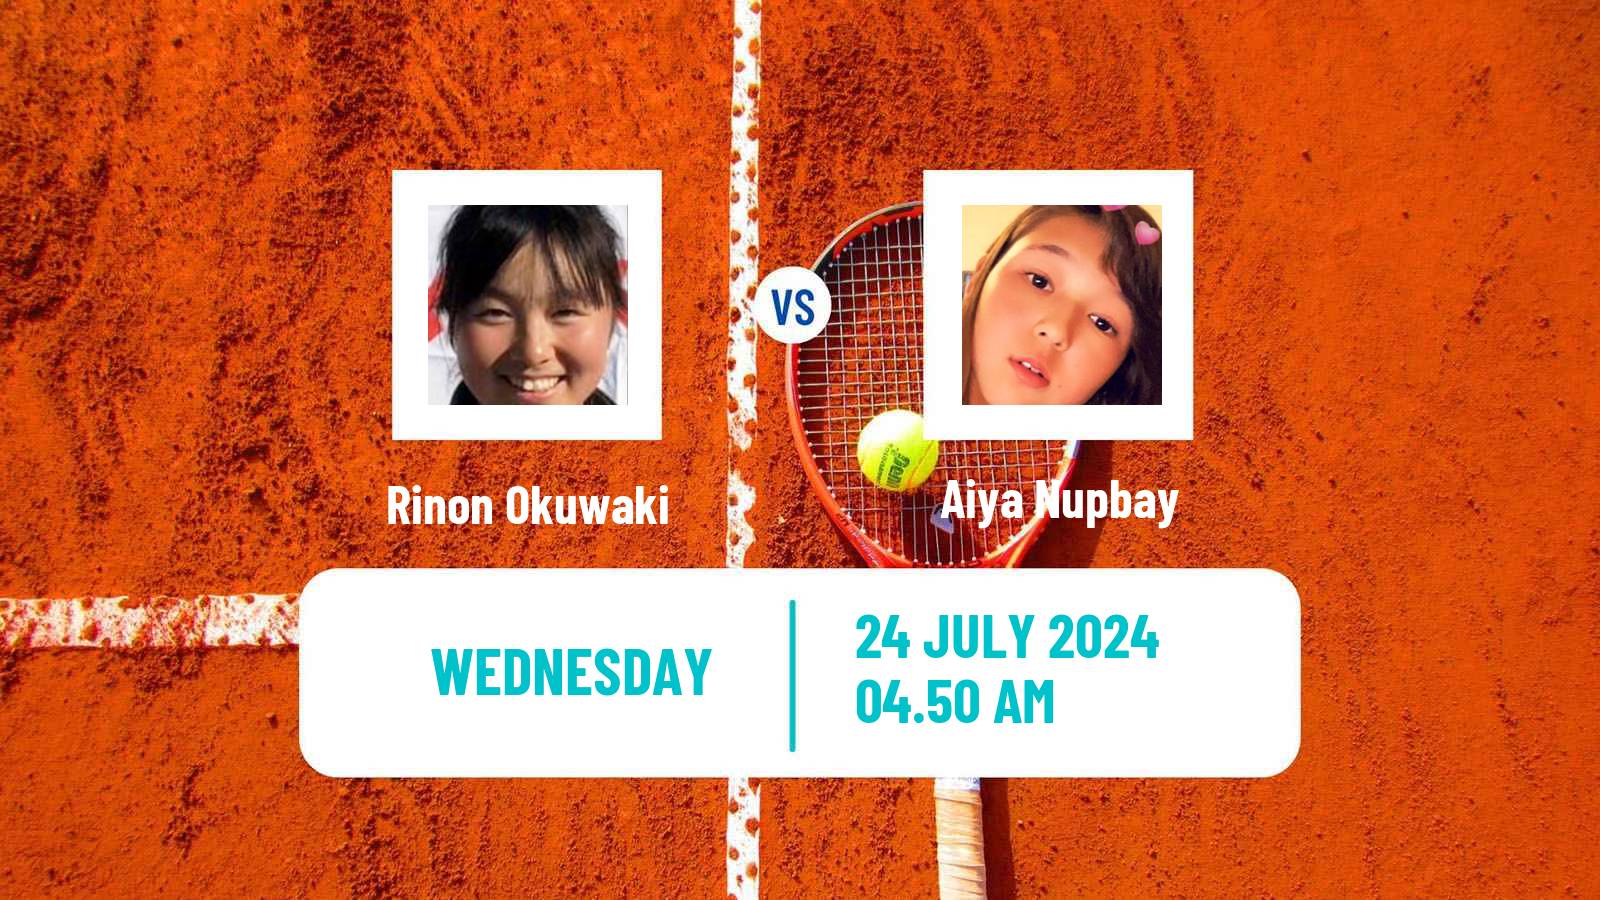 Tennis ITF W35 Astana Women Rinon Okuwaki - Aiya Nupbay